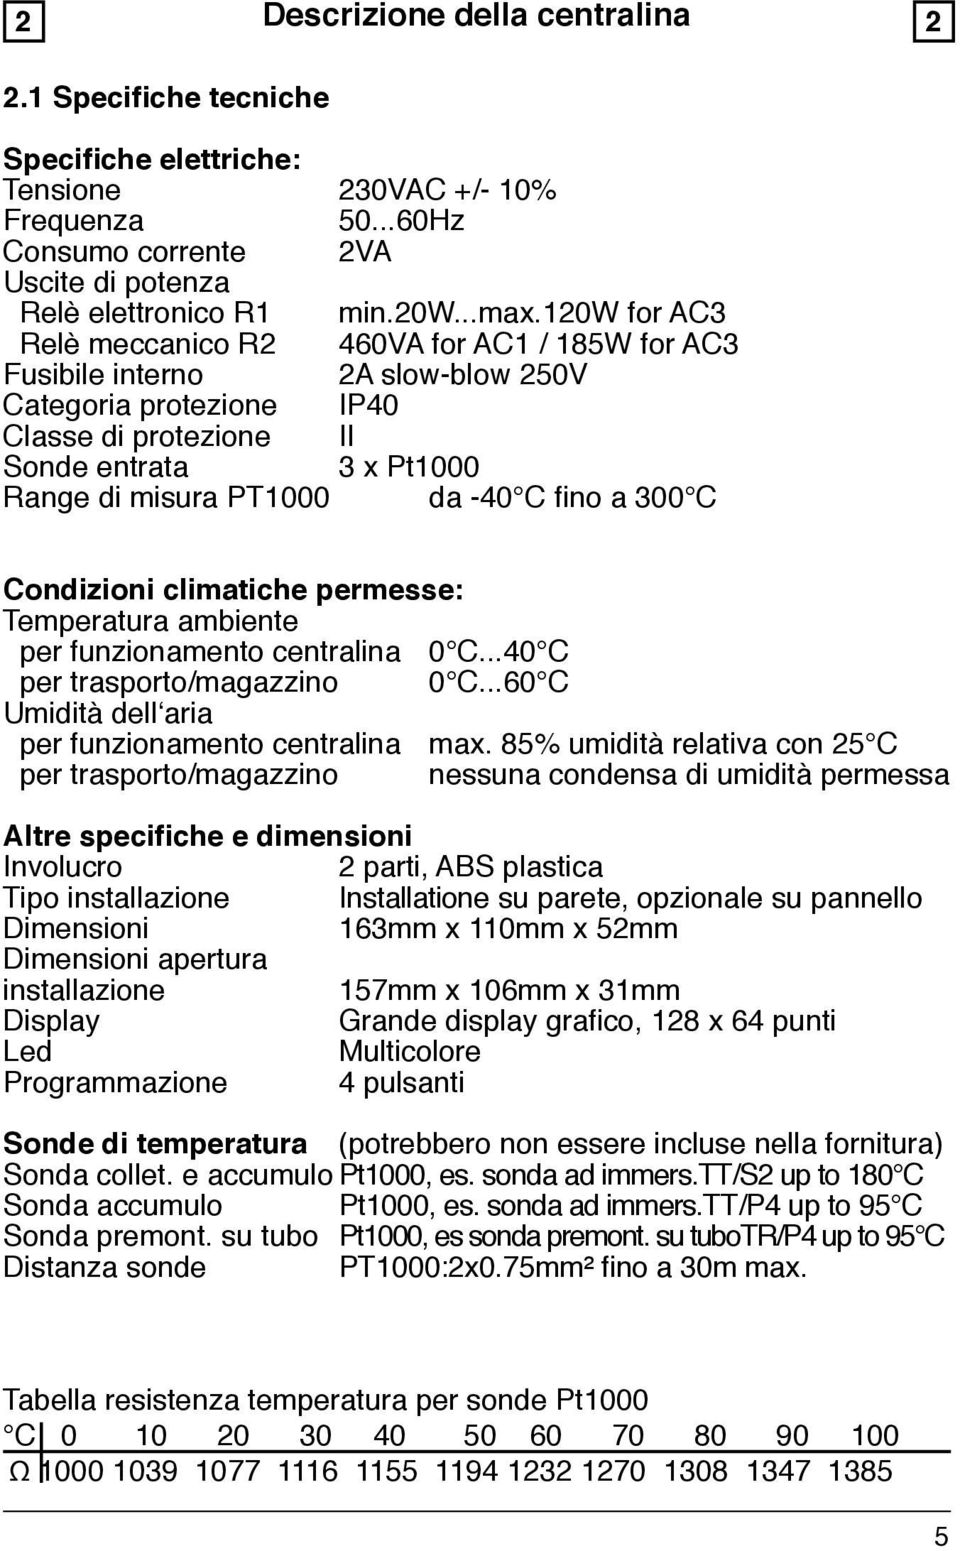 C fino a 300 C Condizioni climatiche permesse: Temperatura ambiente per funzionamento centralina 0 C...40 C per trasporto/magazzino 0 C...60 C Umidità dell aria per funzionamento centralina max.